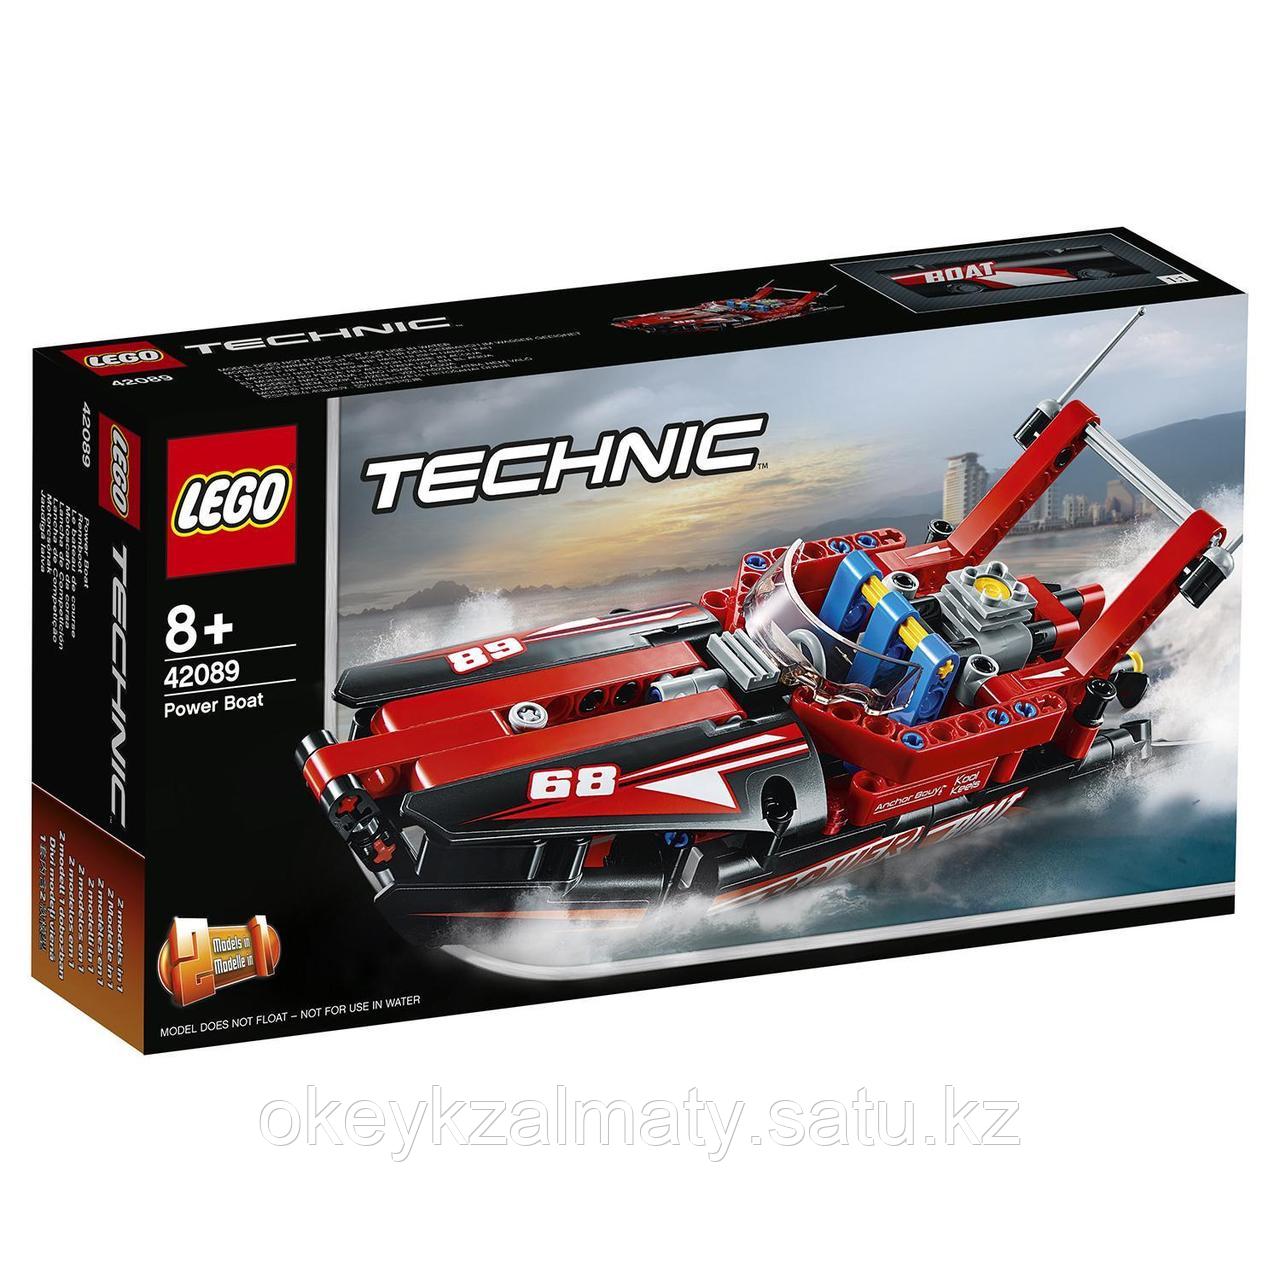 LEGO Technic: Моторная лодка 42089